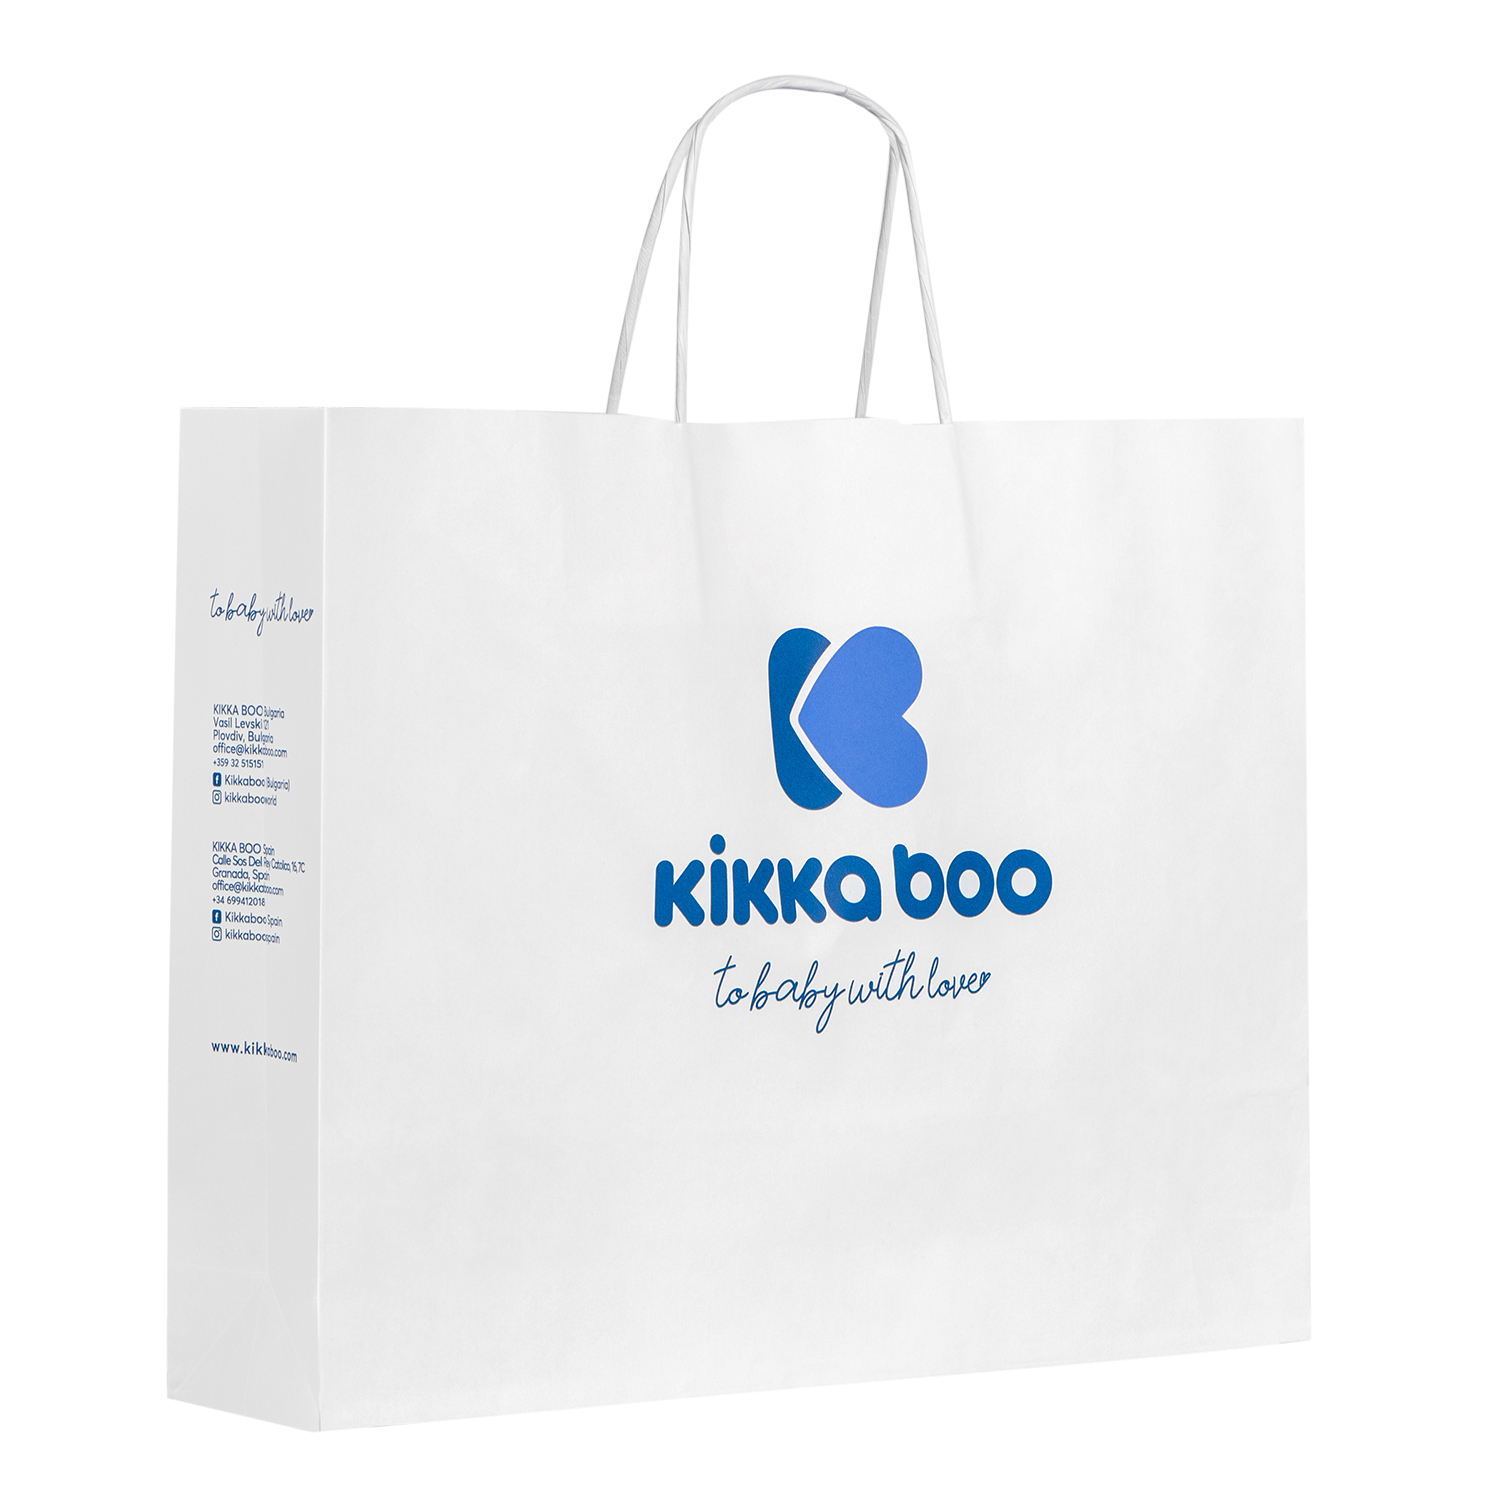 kikkaboo_paper_bag_3-4_b2b_1